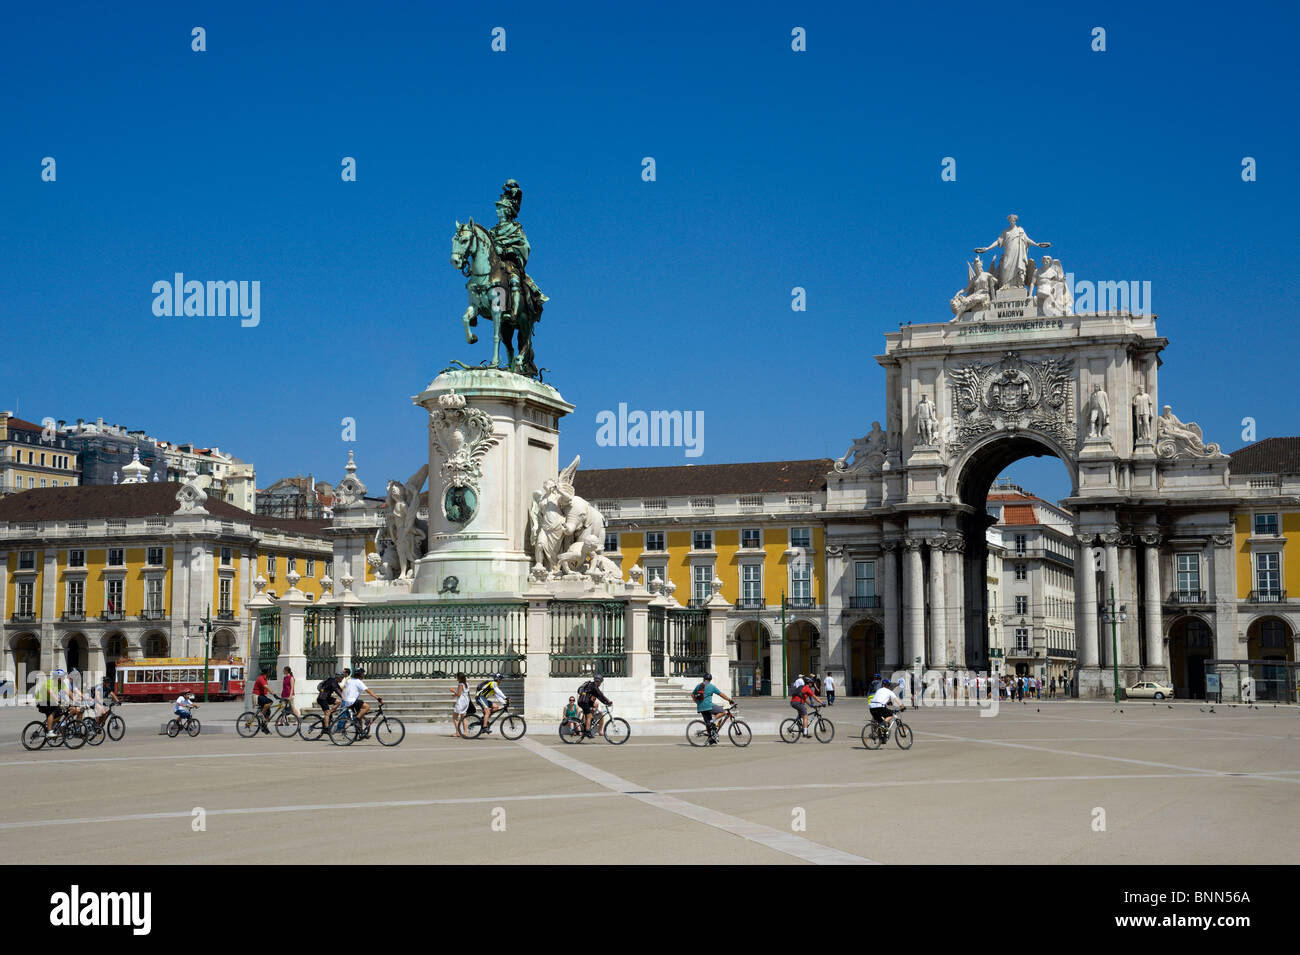 Portugal, Lisbon, the Praca do Comercio, Terreiro do Paco, square with the statue of Dom José I Stock Photo